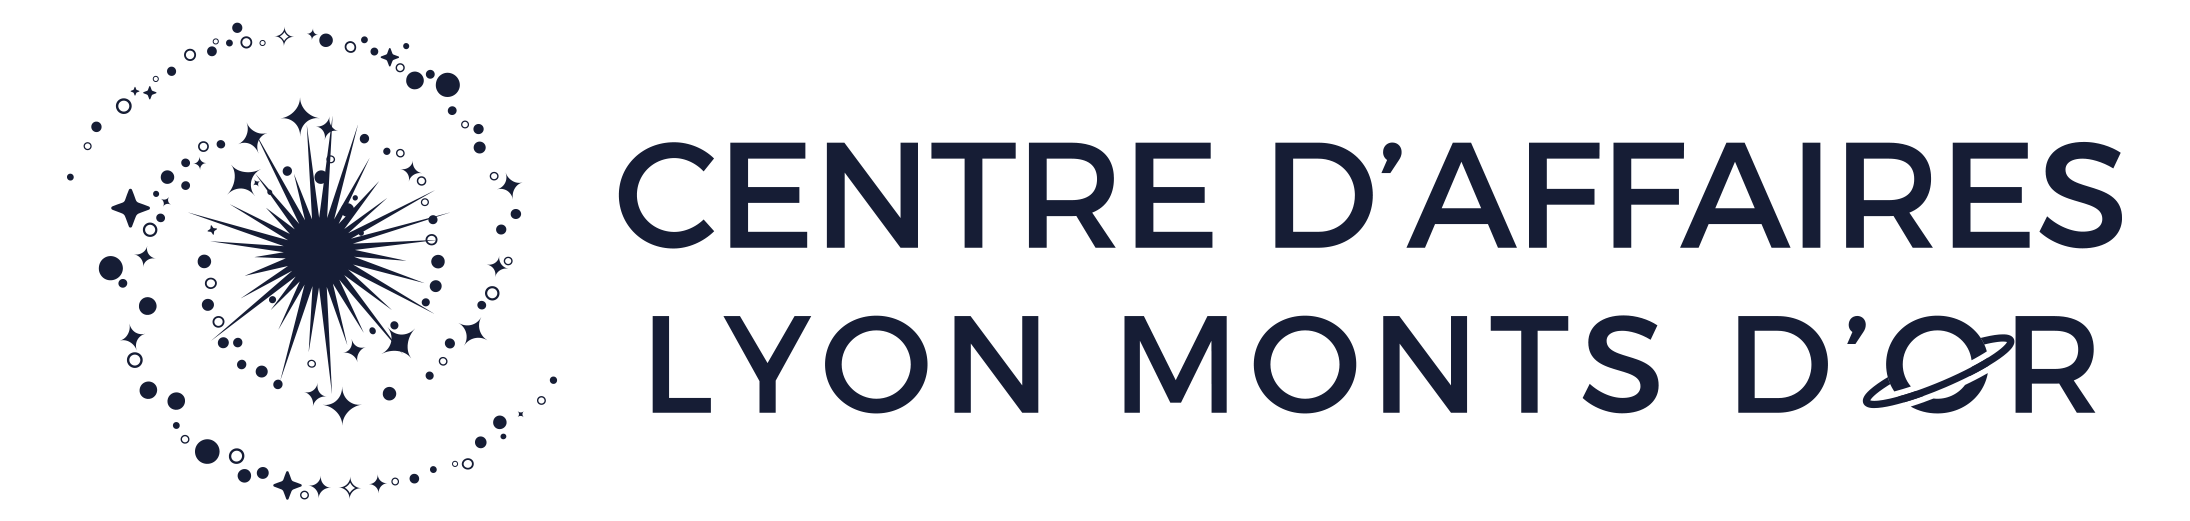 Centre d'affaires Lyon Monts d'Or